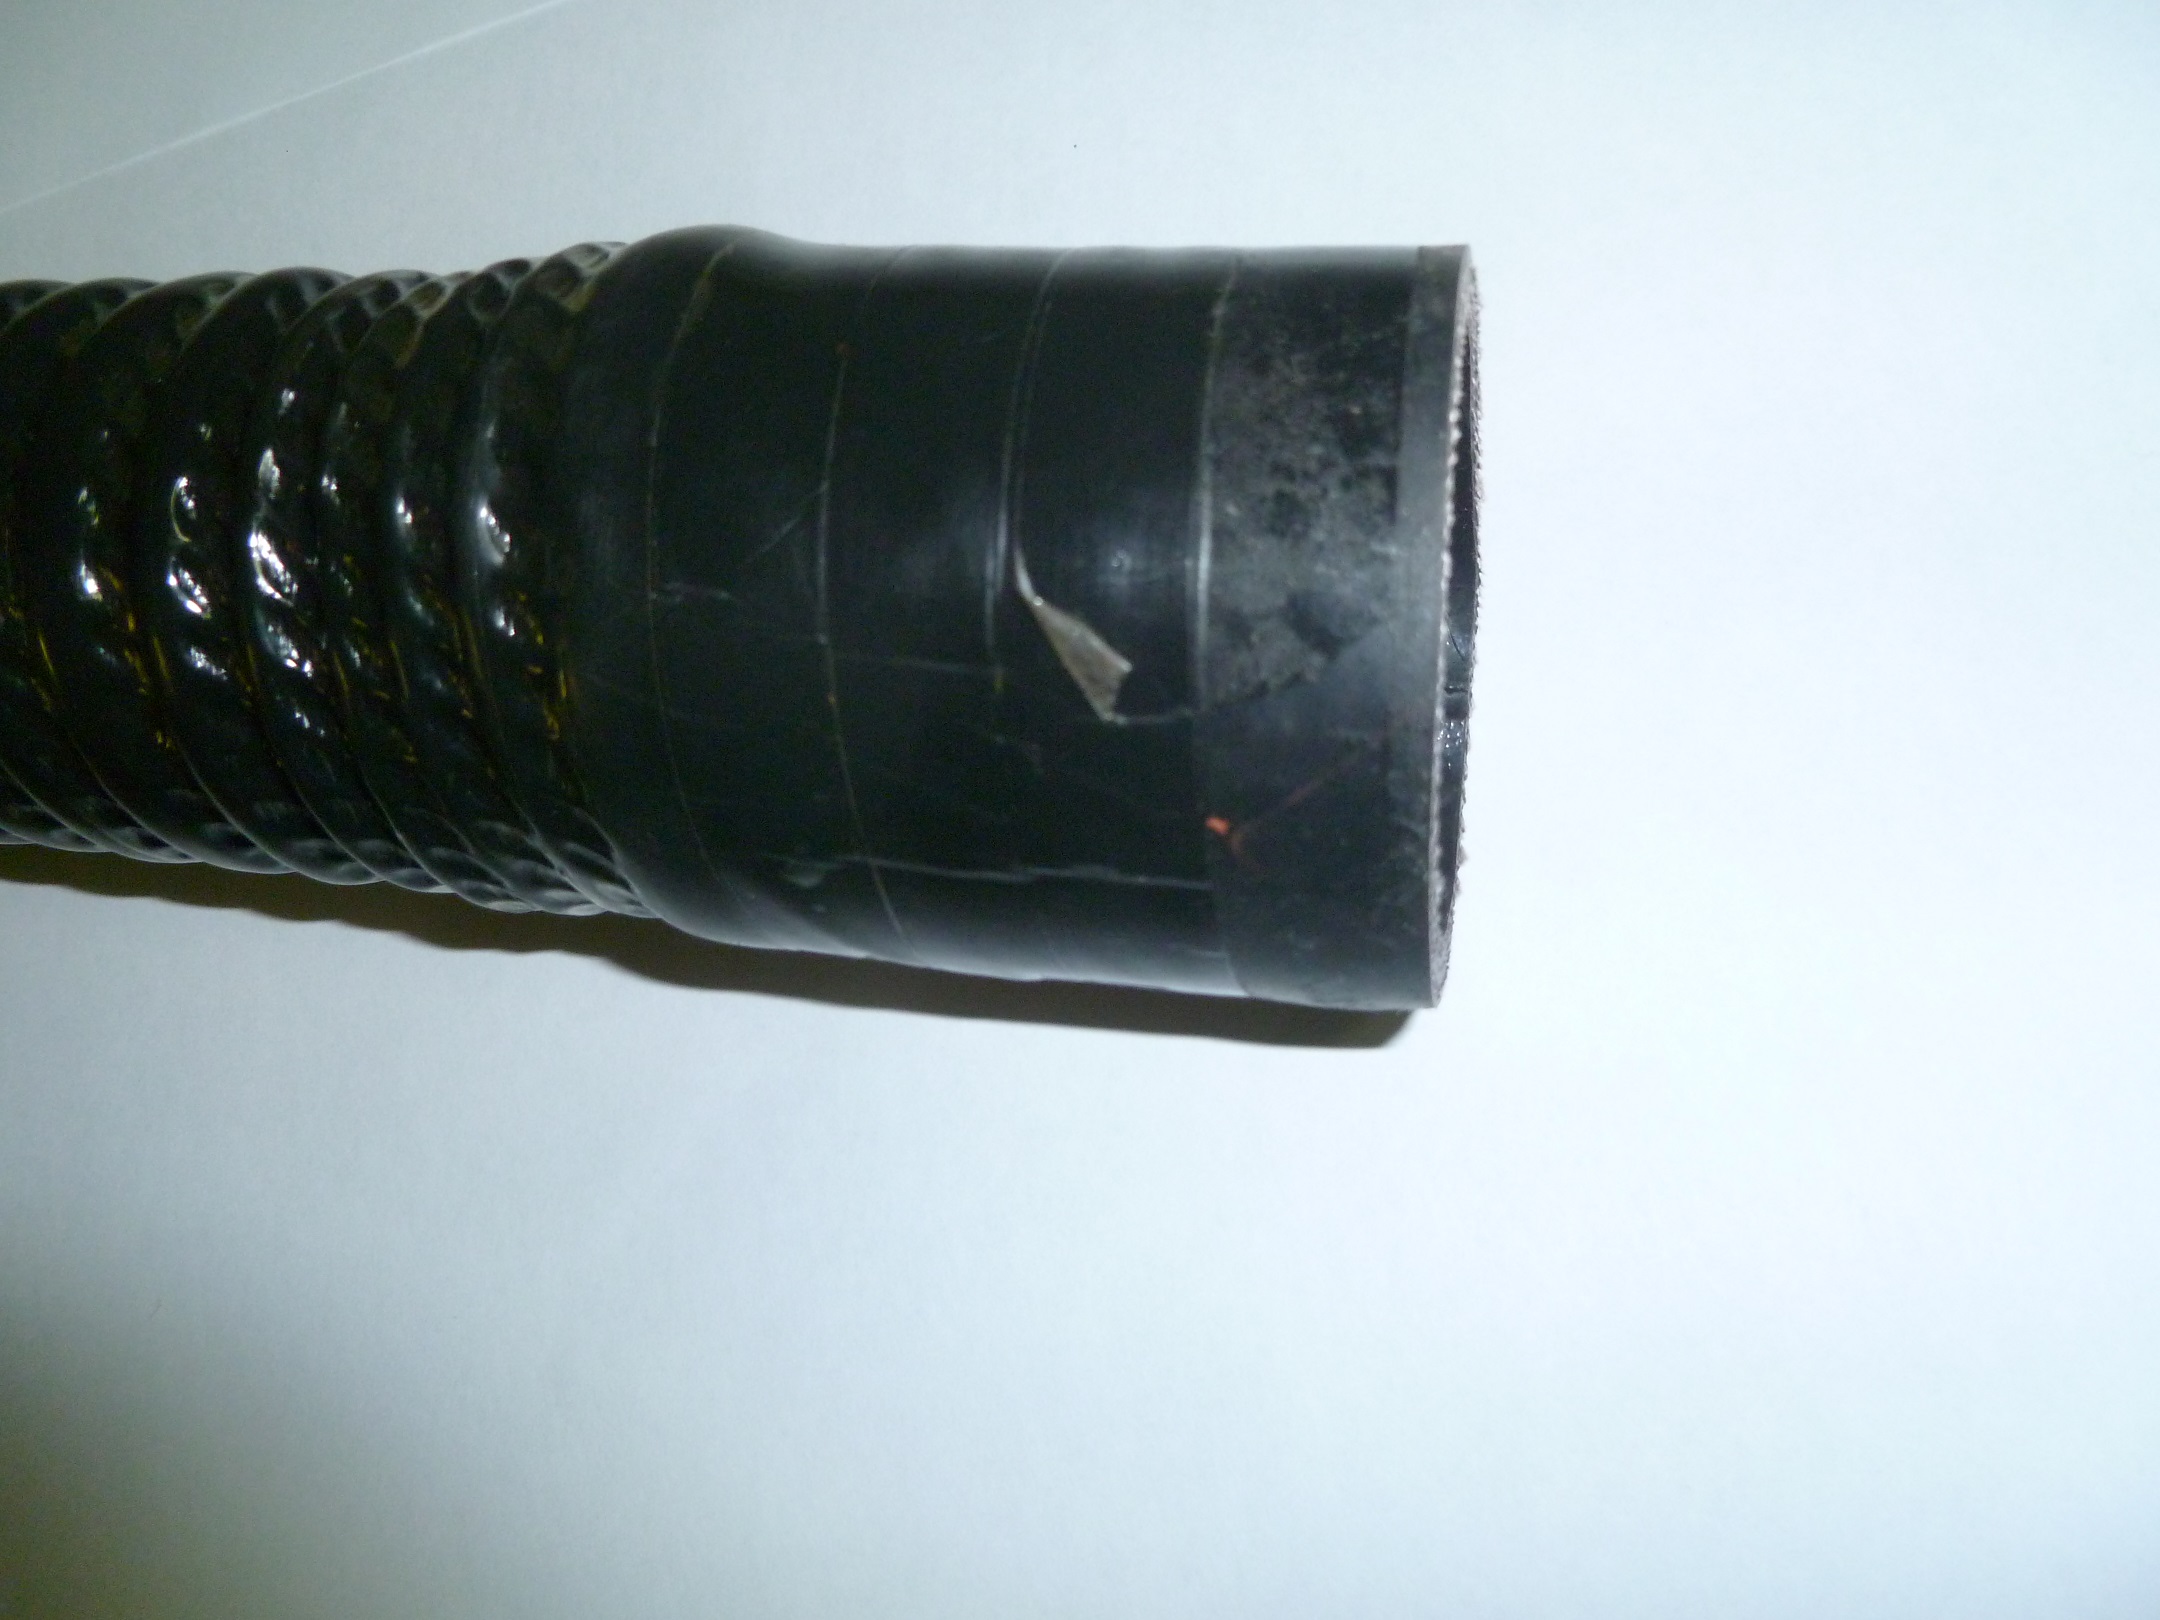 Патрубок радиатора (58х46х630) нижний Ricardo R6110ZLDS; TDK 170 6LT/Radiator Rubber hose